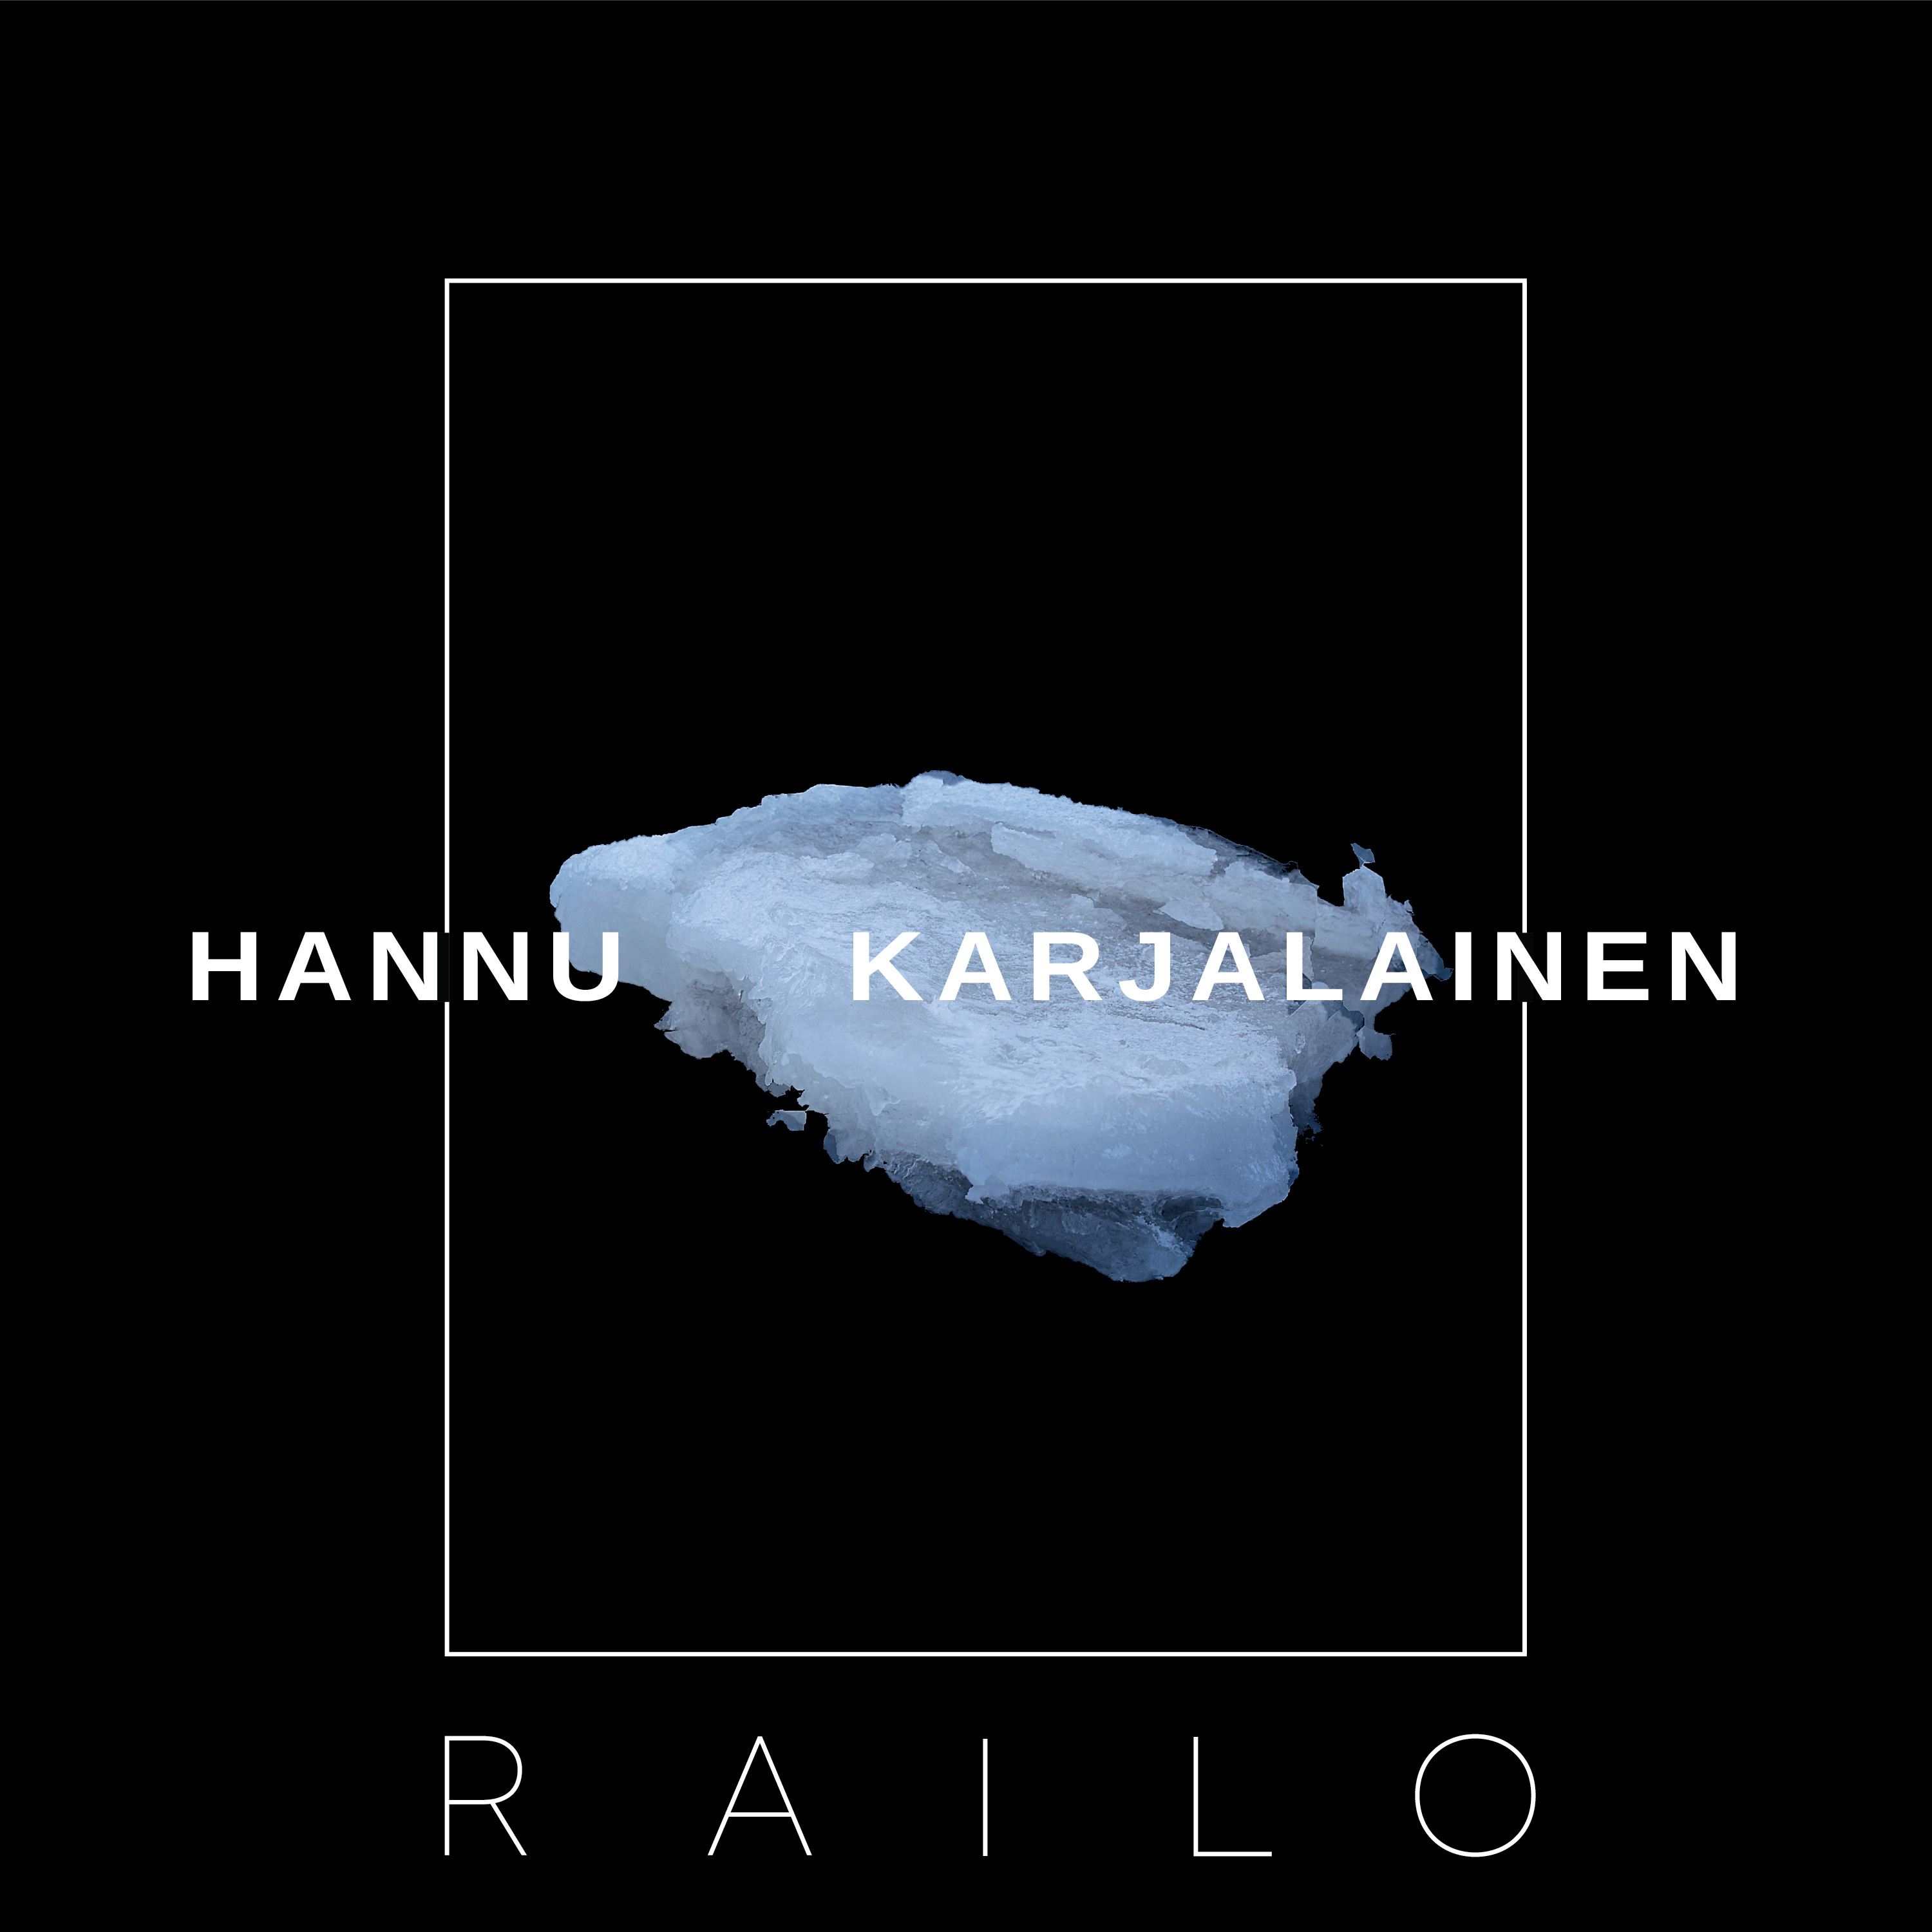 hannu-karjalainen-railo-digi-valmis-1